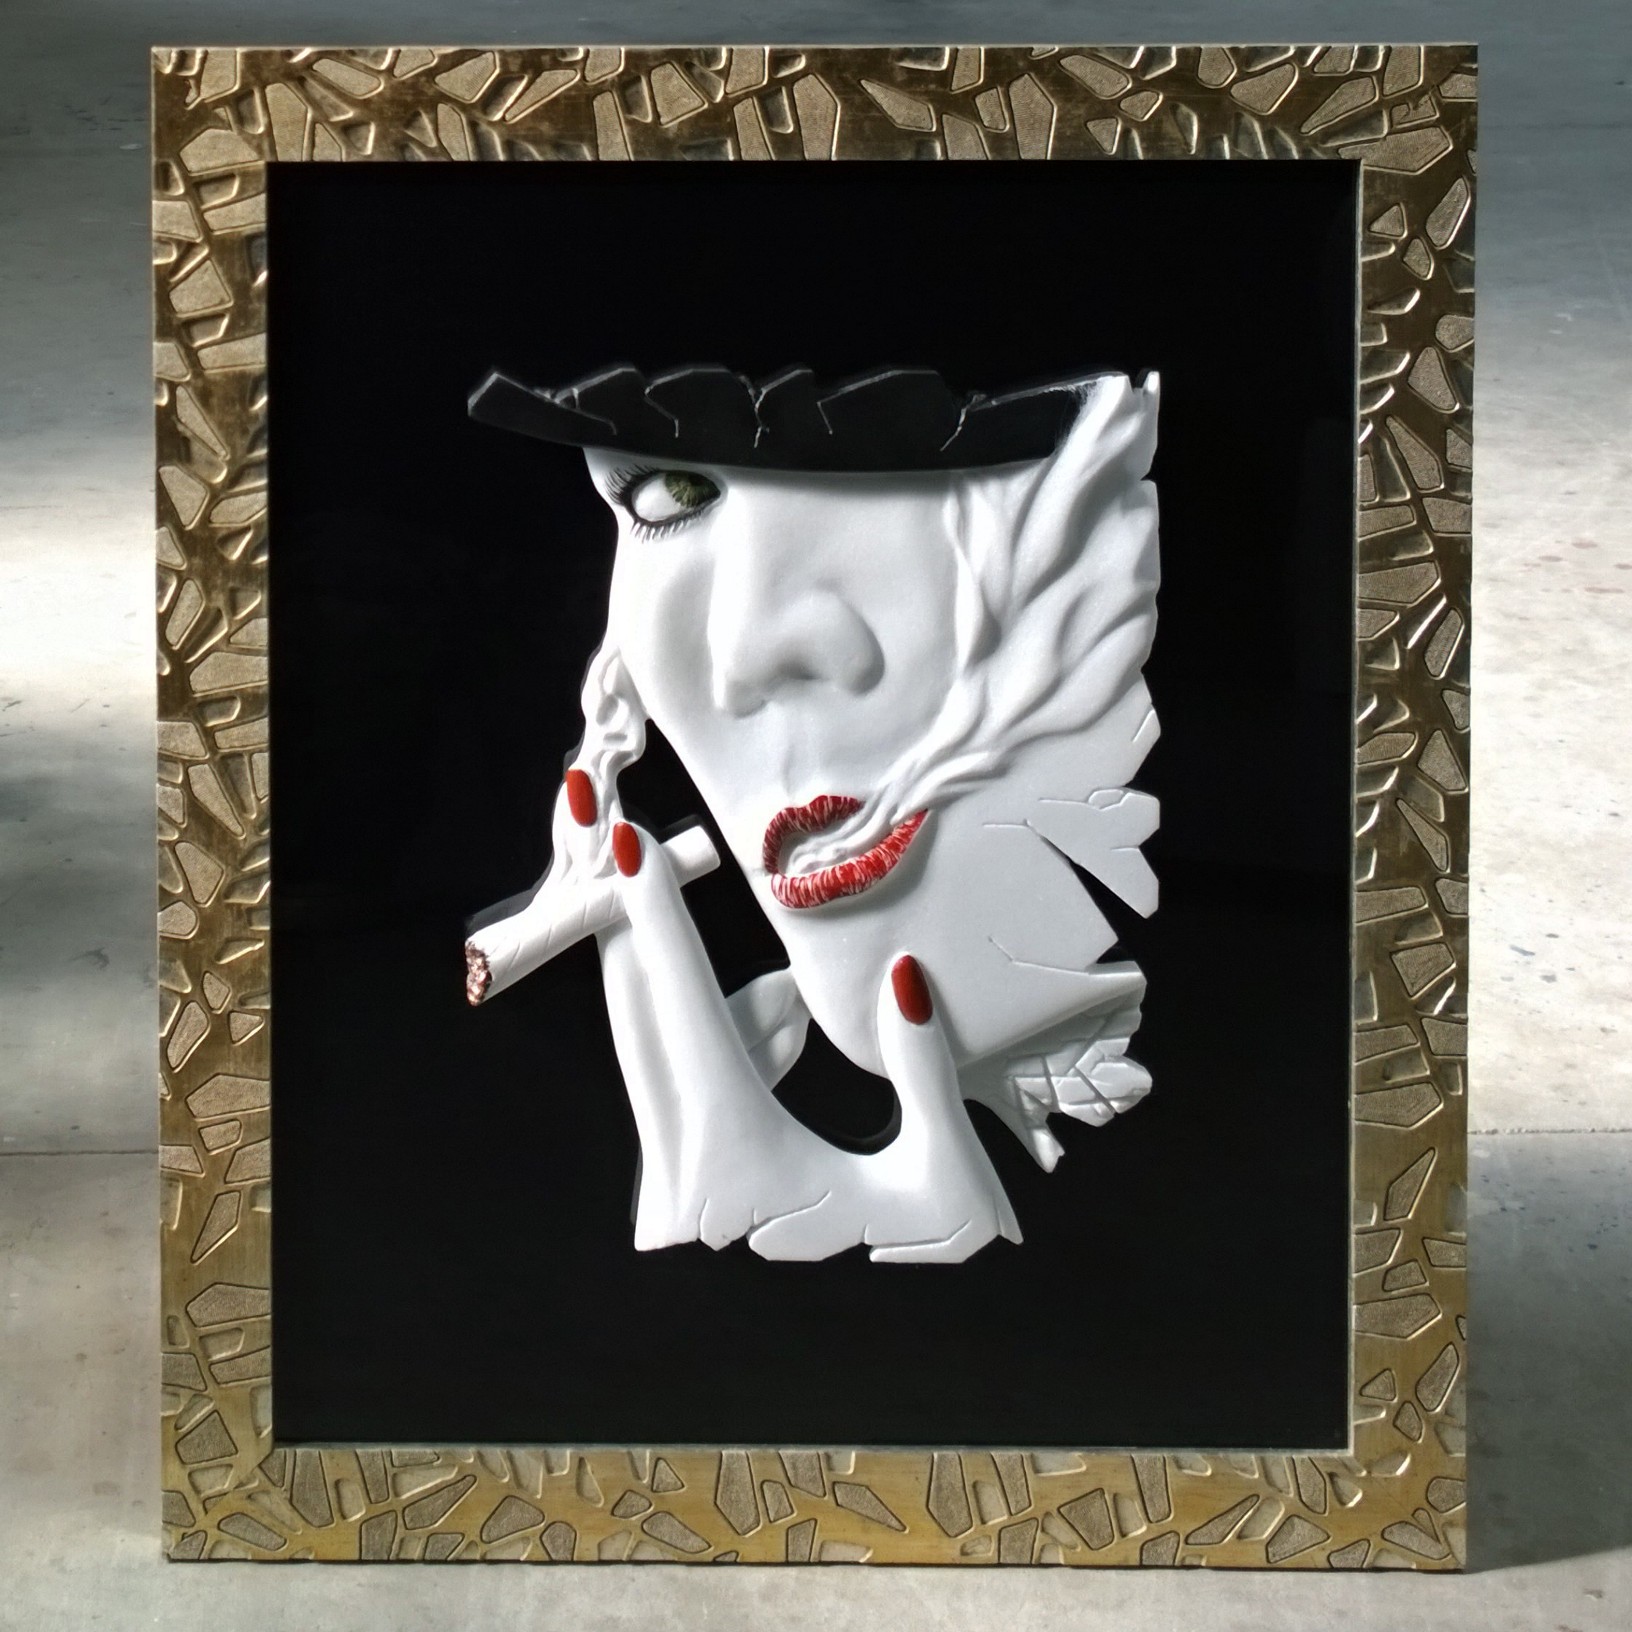 Nazareno Biondo Free Woman marble on frame 70x60x5cm 2016